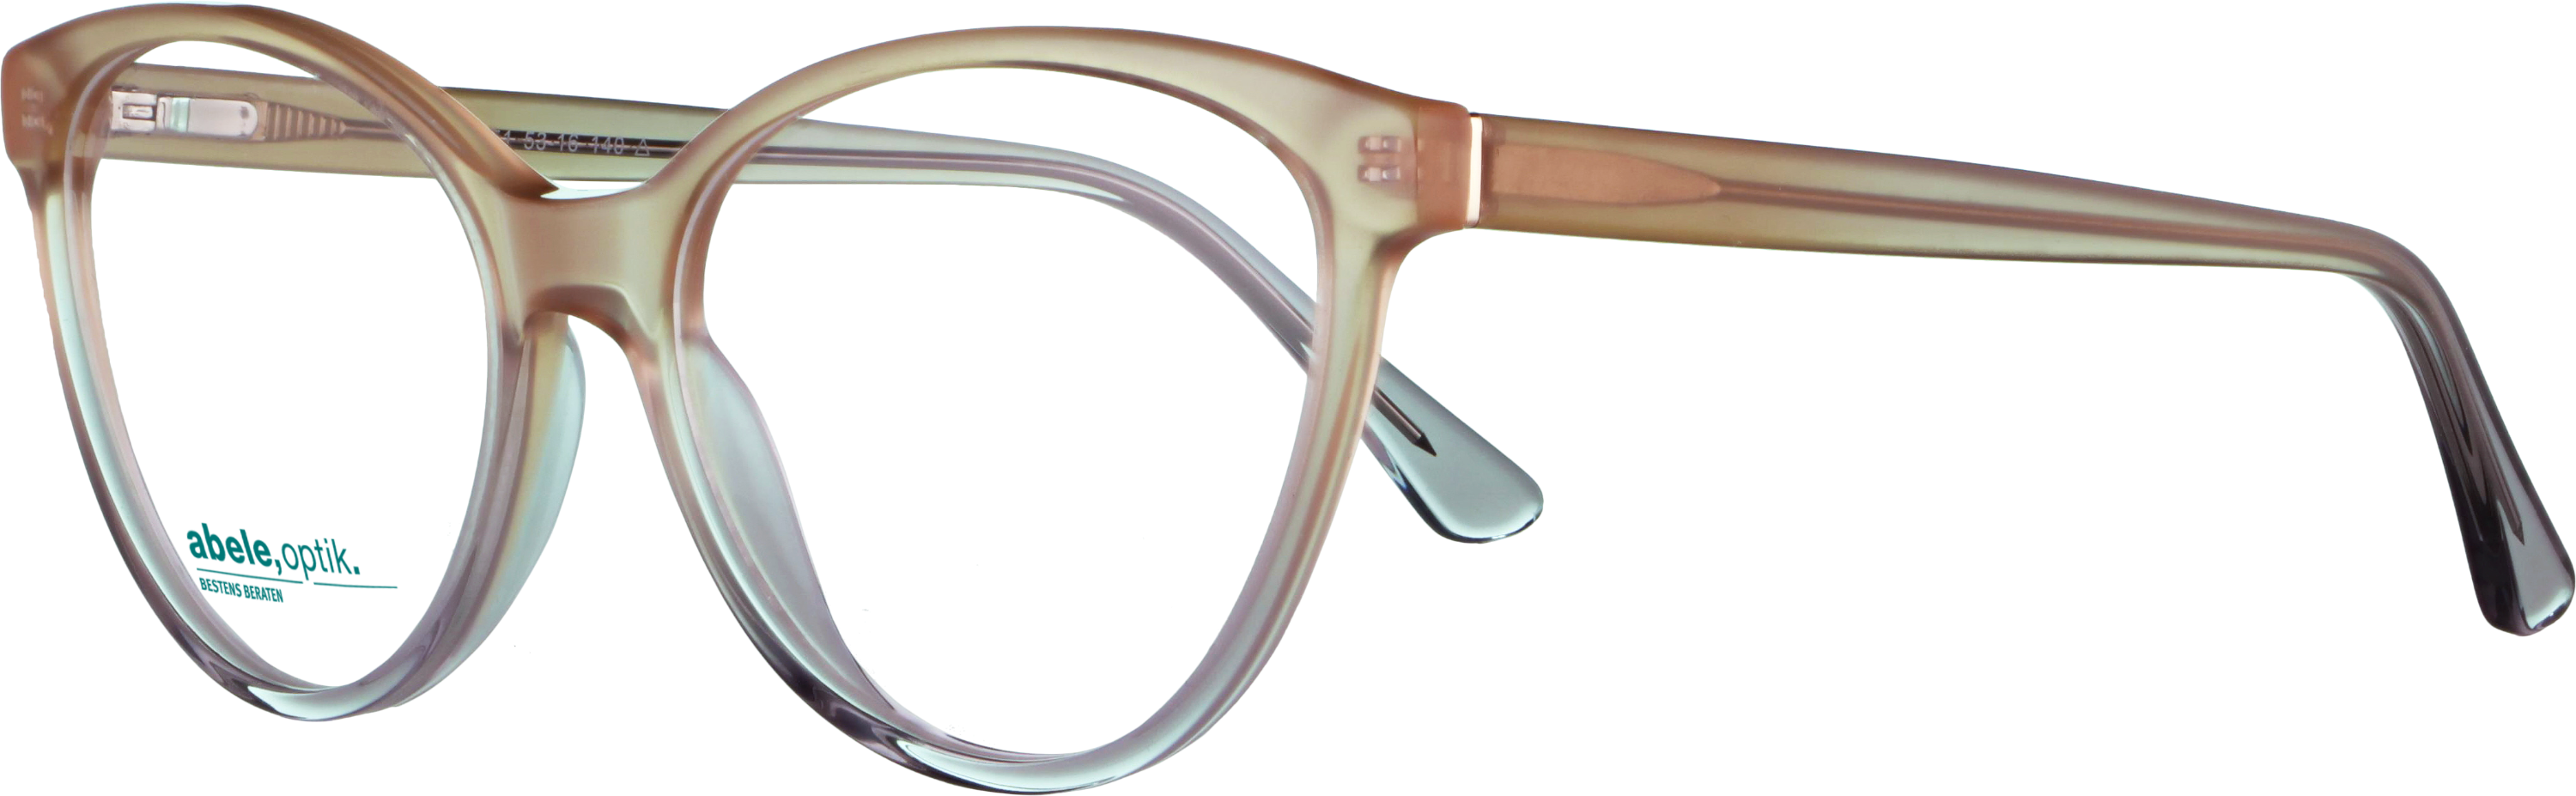 Das Bild zeigt die Korrektionsbrille 142551 von der Marke Abele Optik in beige-grau-transparent.